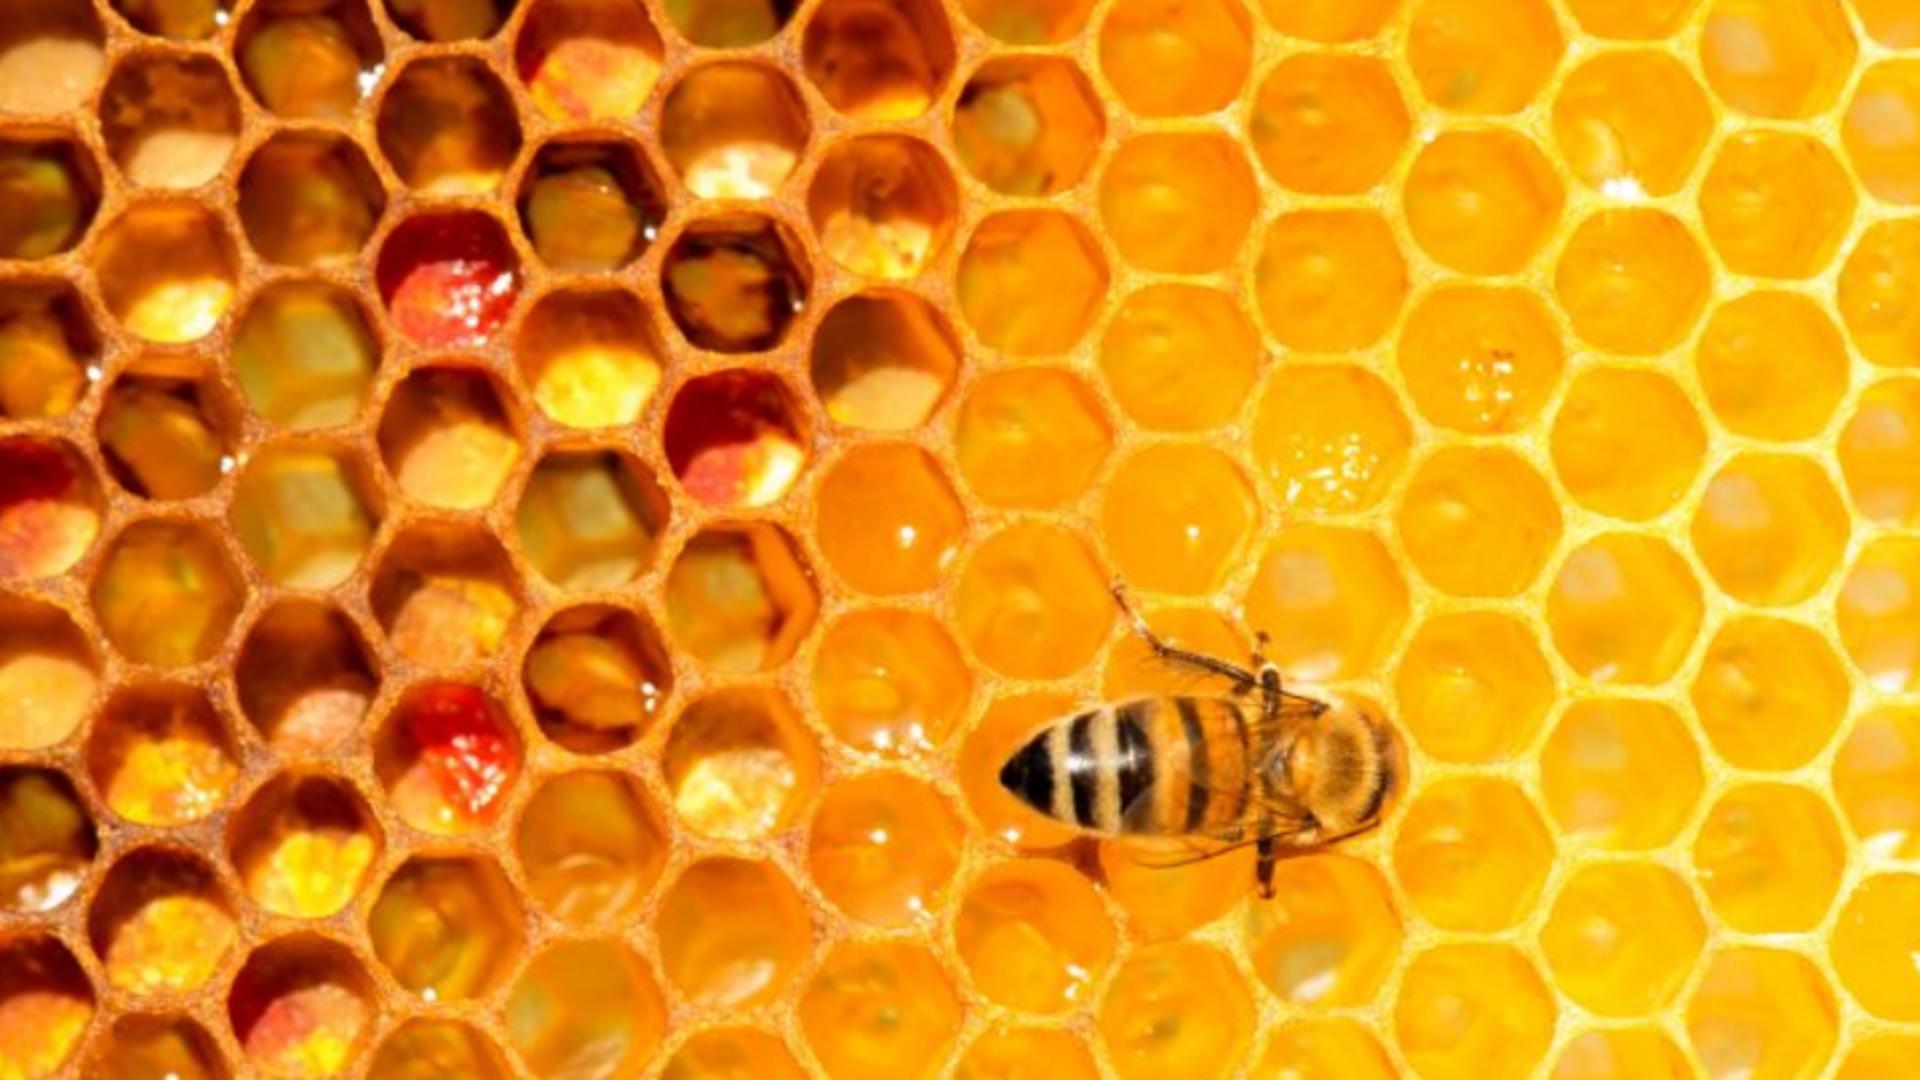 România este lider în UE la stupi de albine, iar apicultorii se plâng că nu au unde să-și vândă mierea după importul masiv din Ucraina